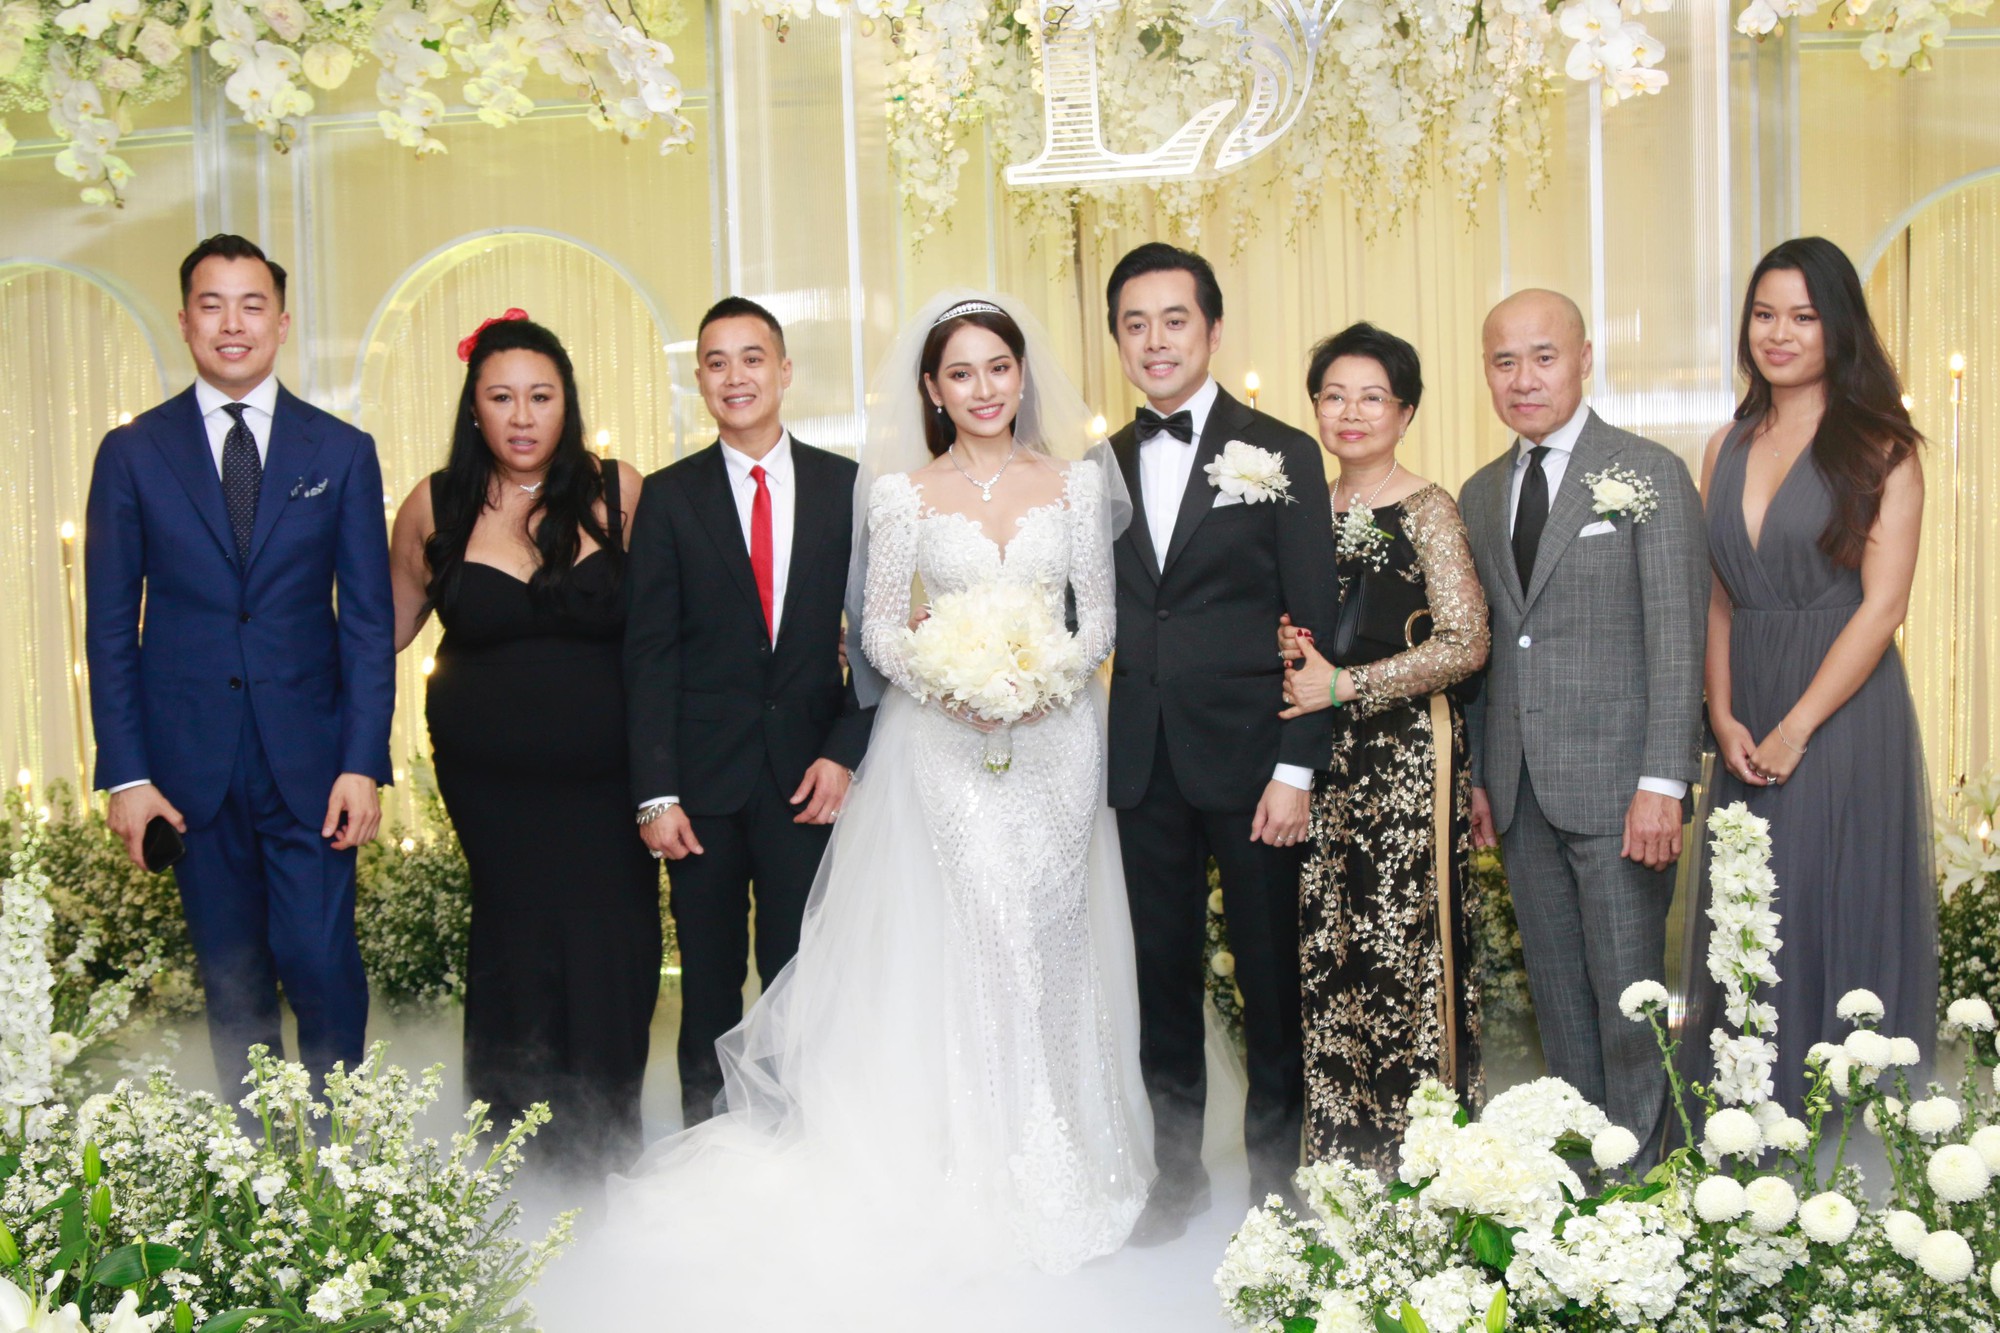 Tiệc cưới chính thức bắt đầu, cô dâu Sara Lưu âu yếm lau nhẹ vết son của mình trên môi chú rể Dương Khắc Linh-25